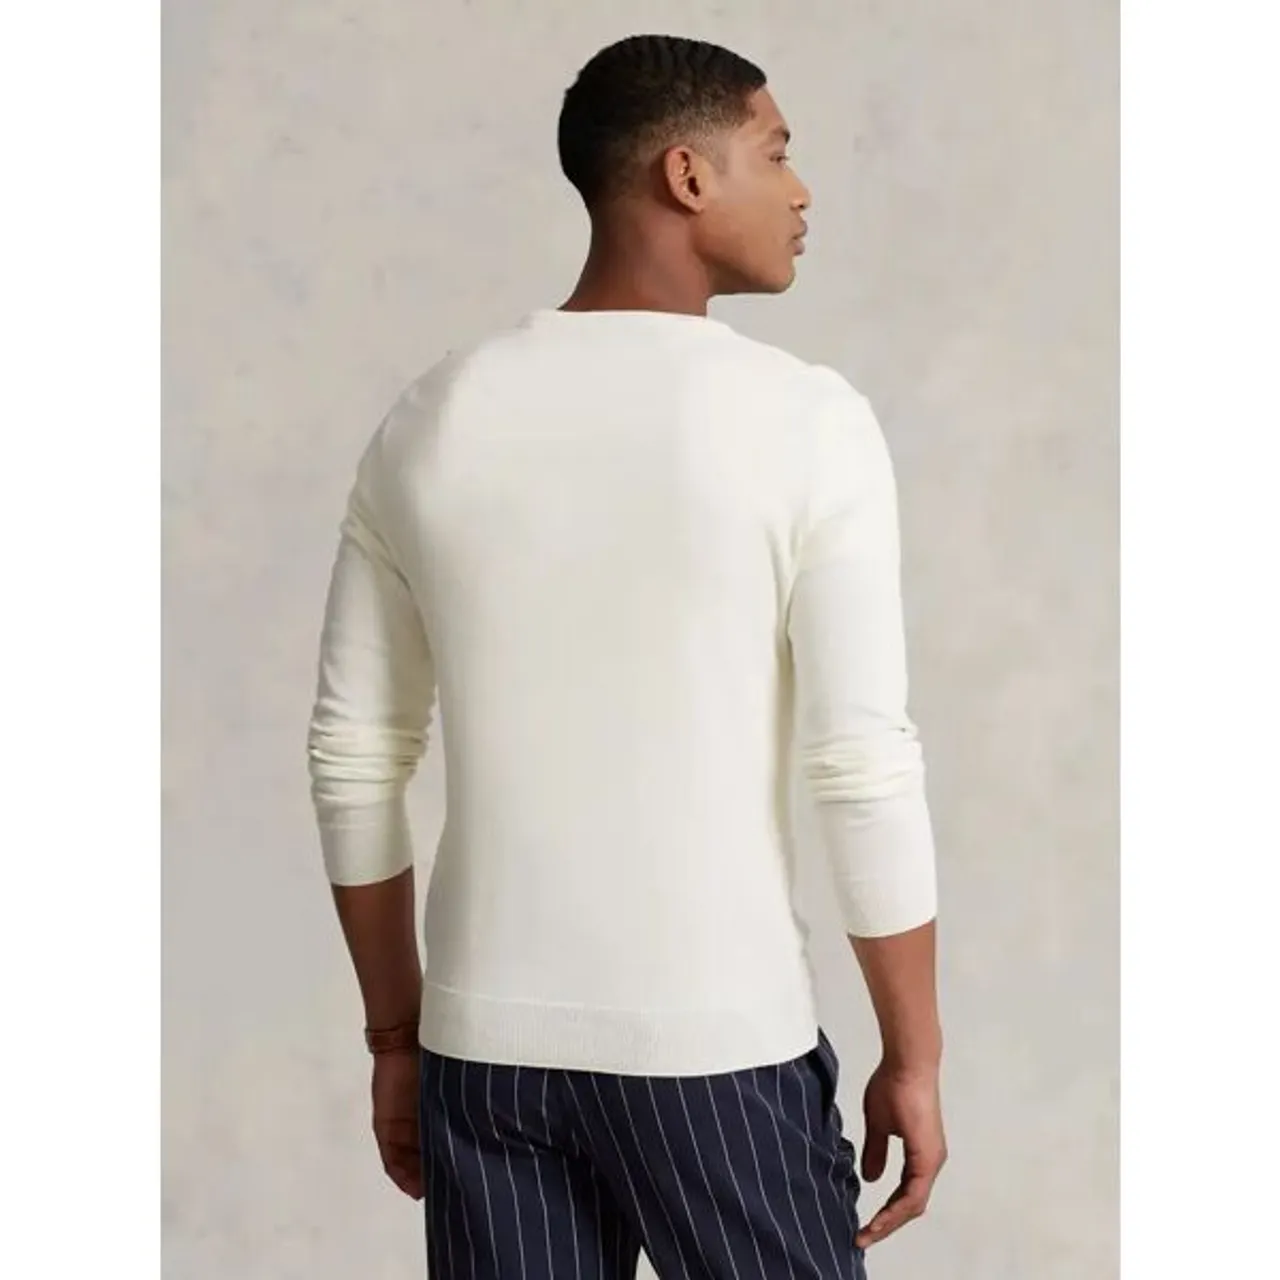 Ralph Lauren Slim Fit Textured Cotton Sweater, Antique Cream - Antique Cream - Male